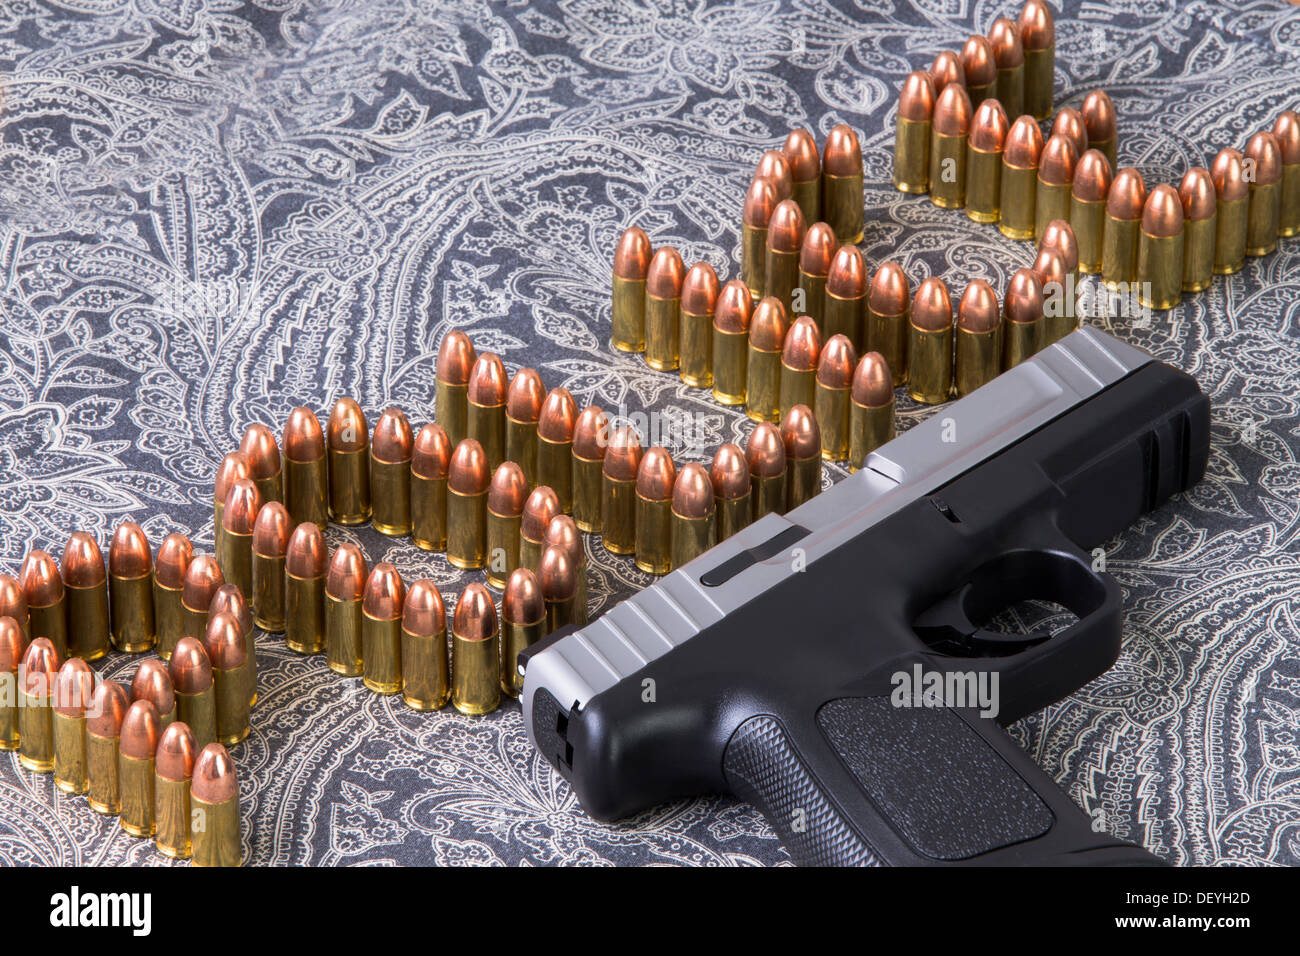 Escritura de la policía con balas y una pistola semiautomática junto a ella Foto de stock